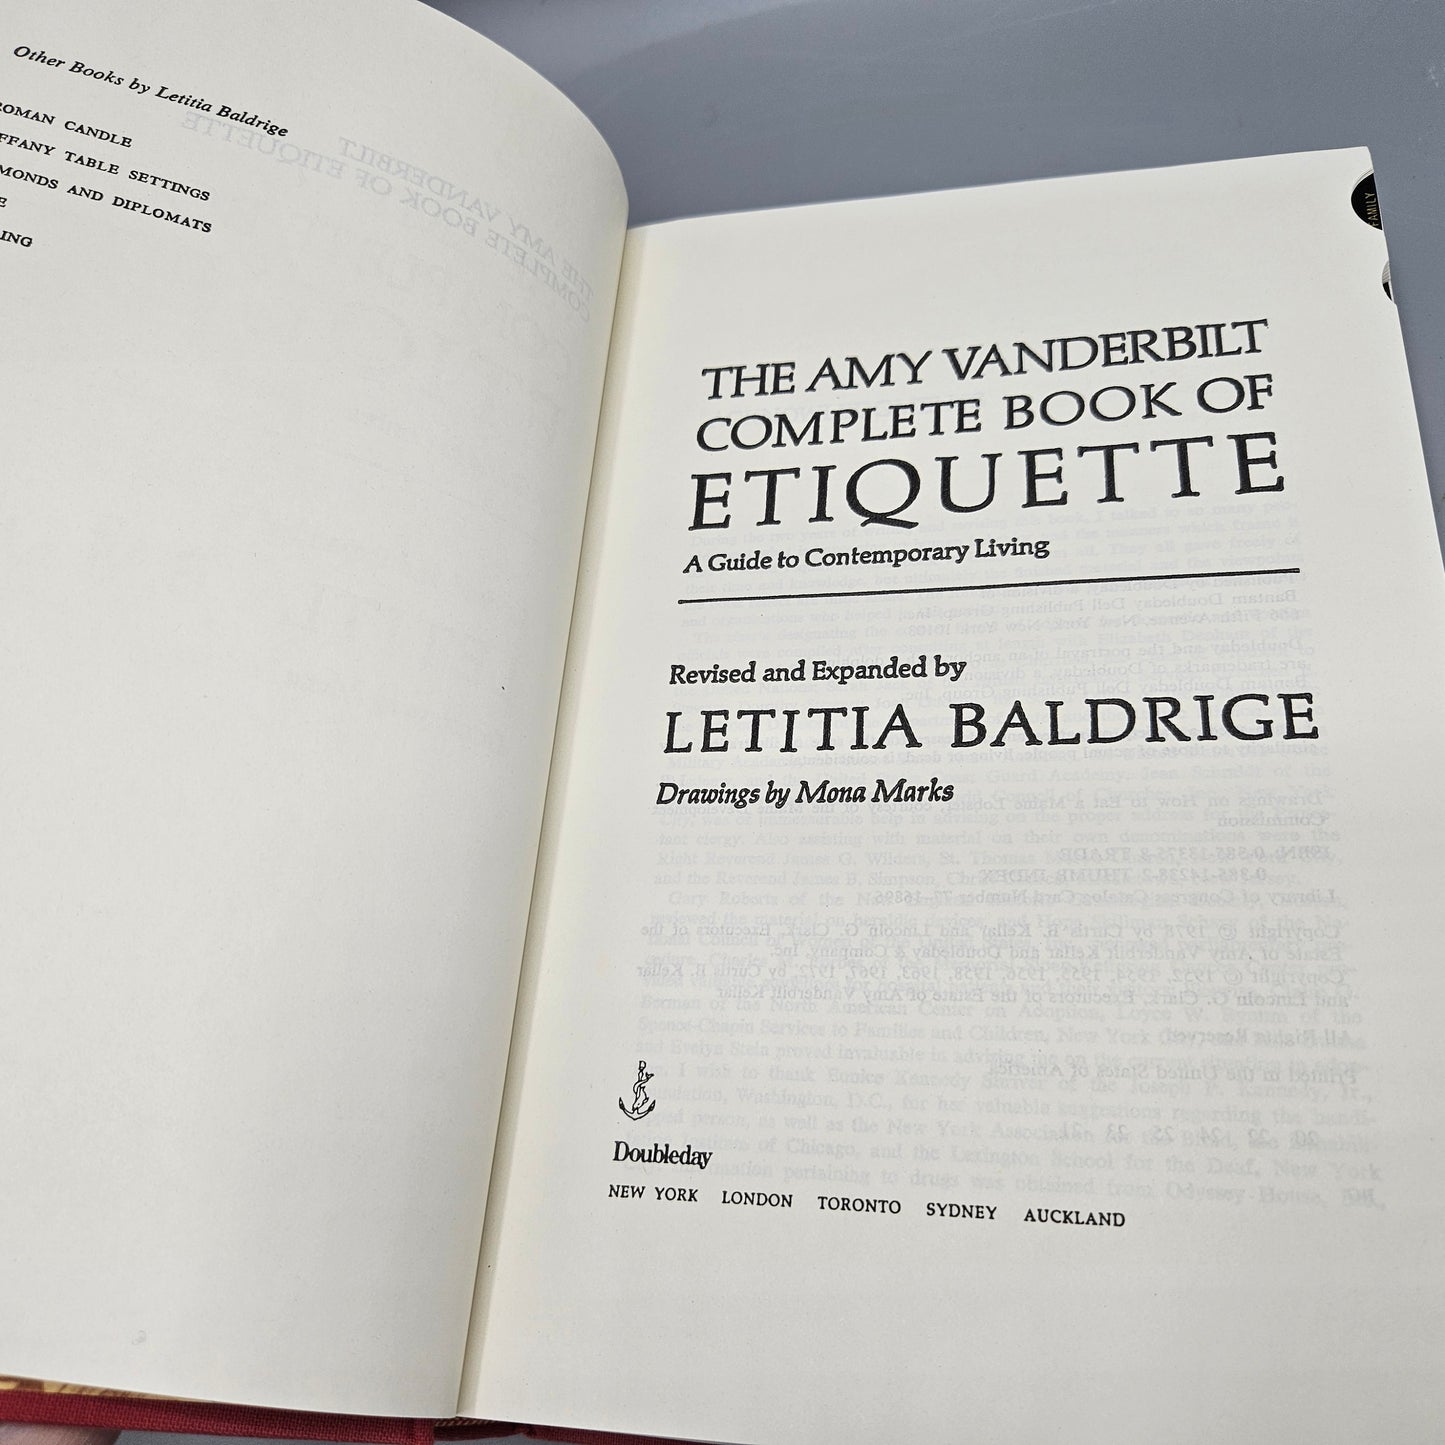 Letita Baldridge "The Amy Vanderbilt Complete Book of Etiquette"